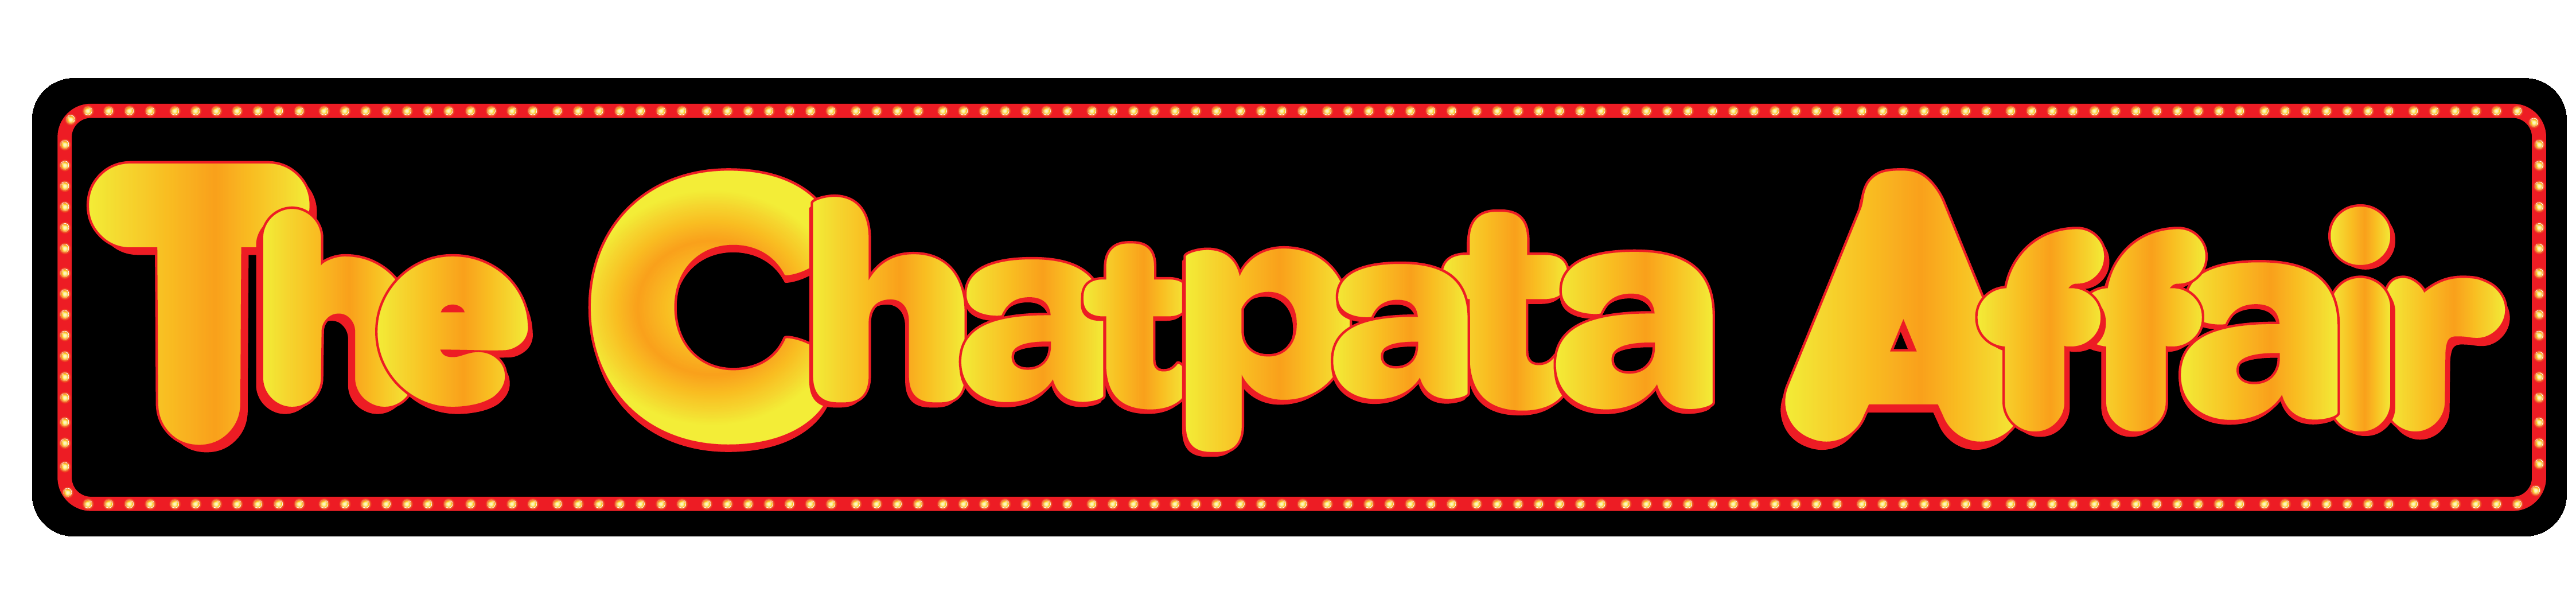 The Chatpata Affair